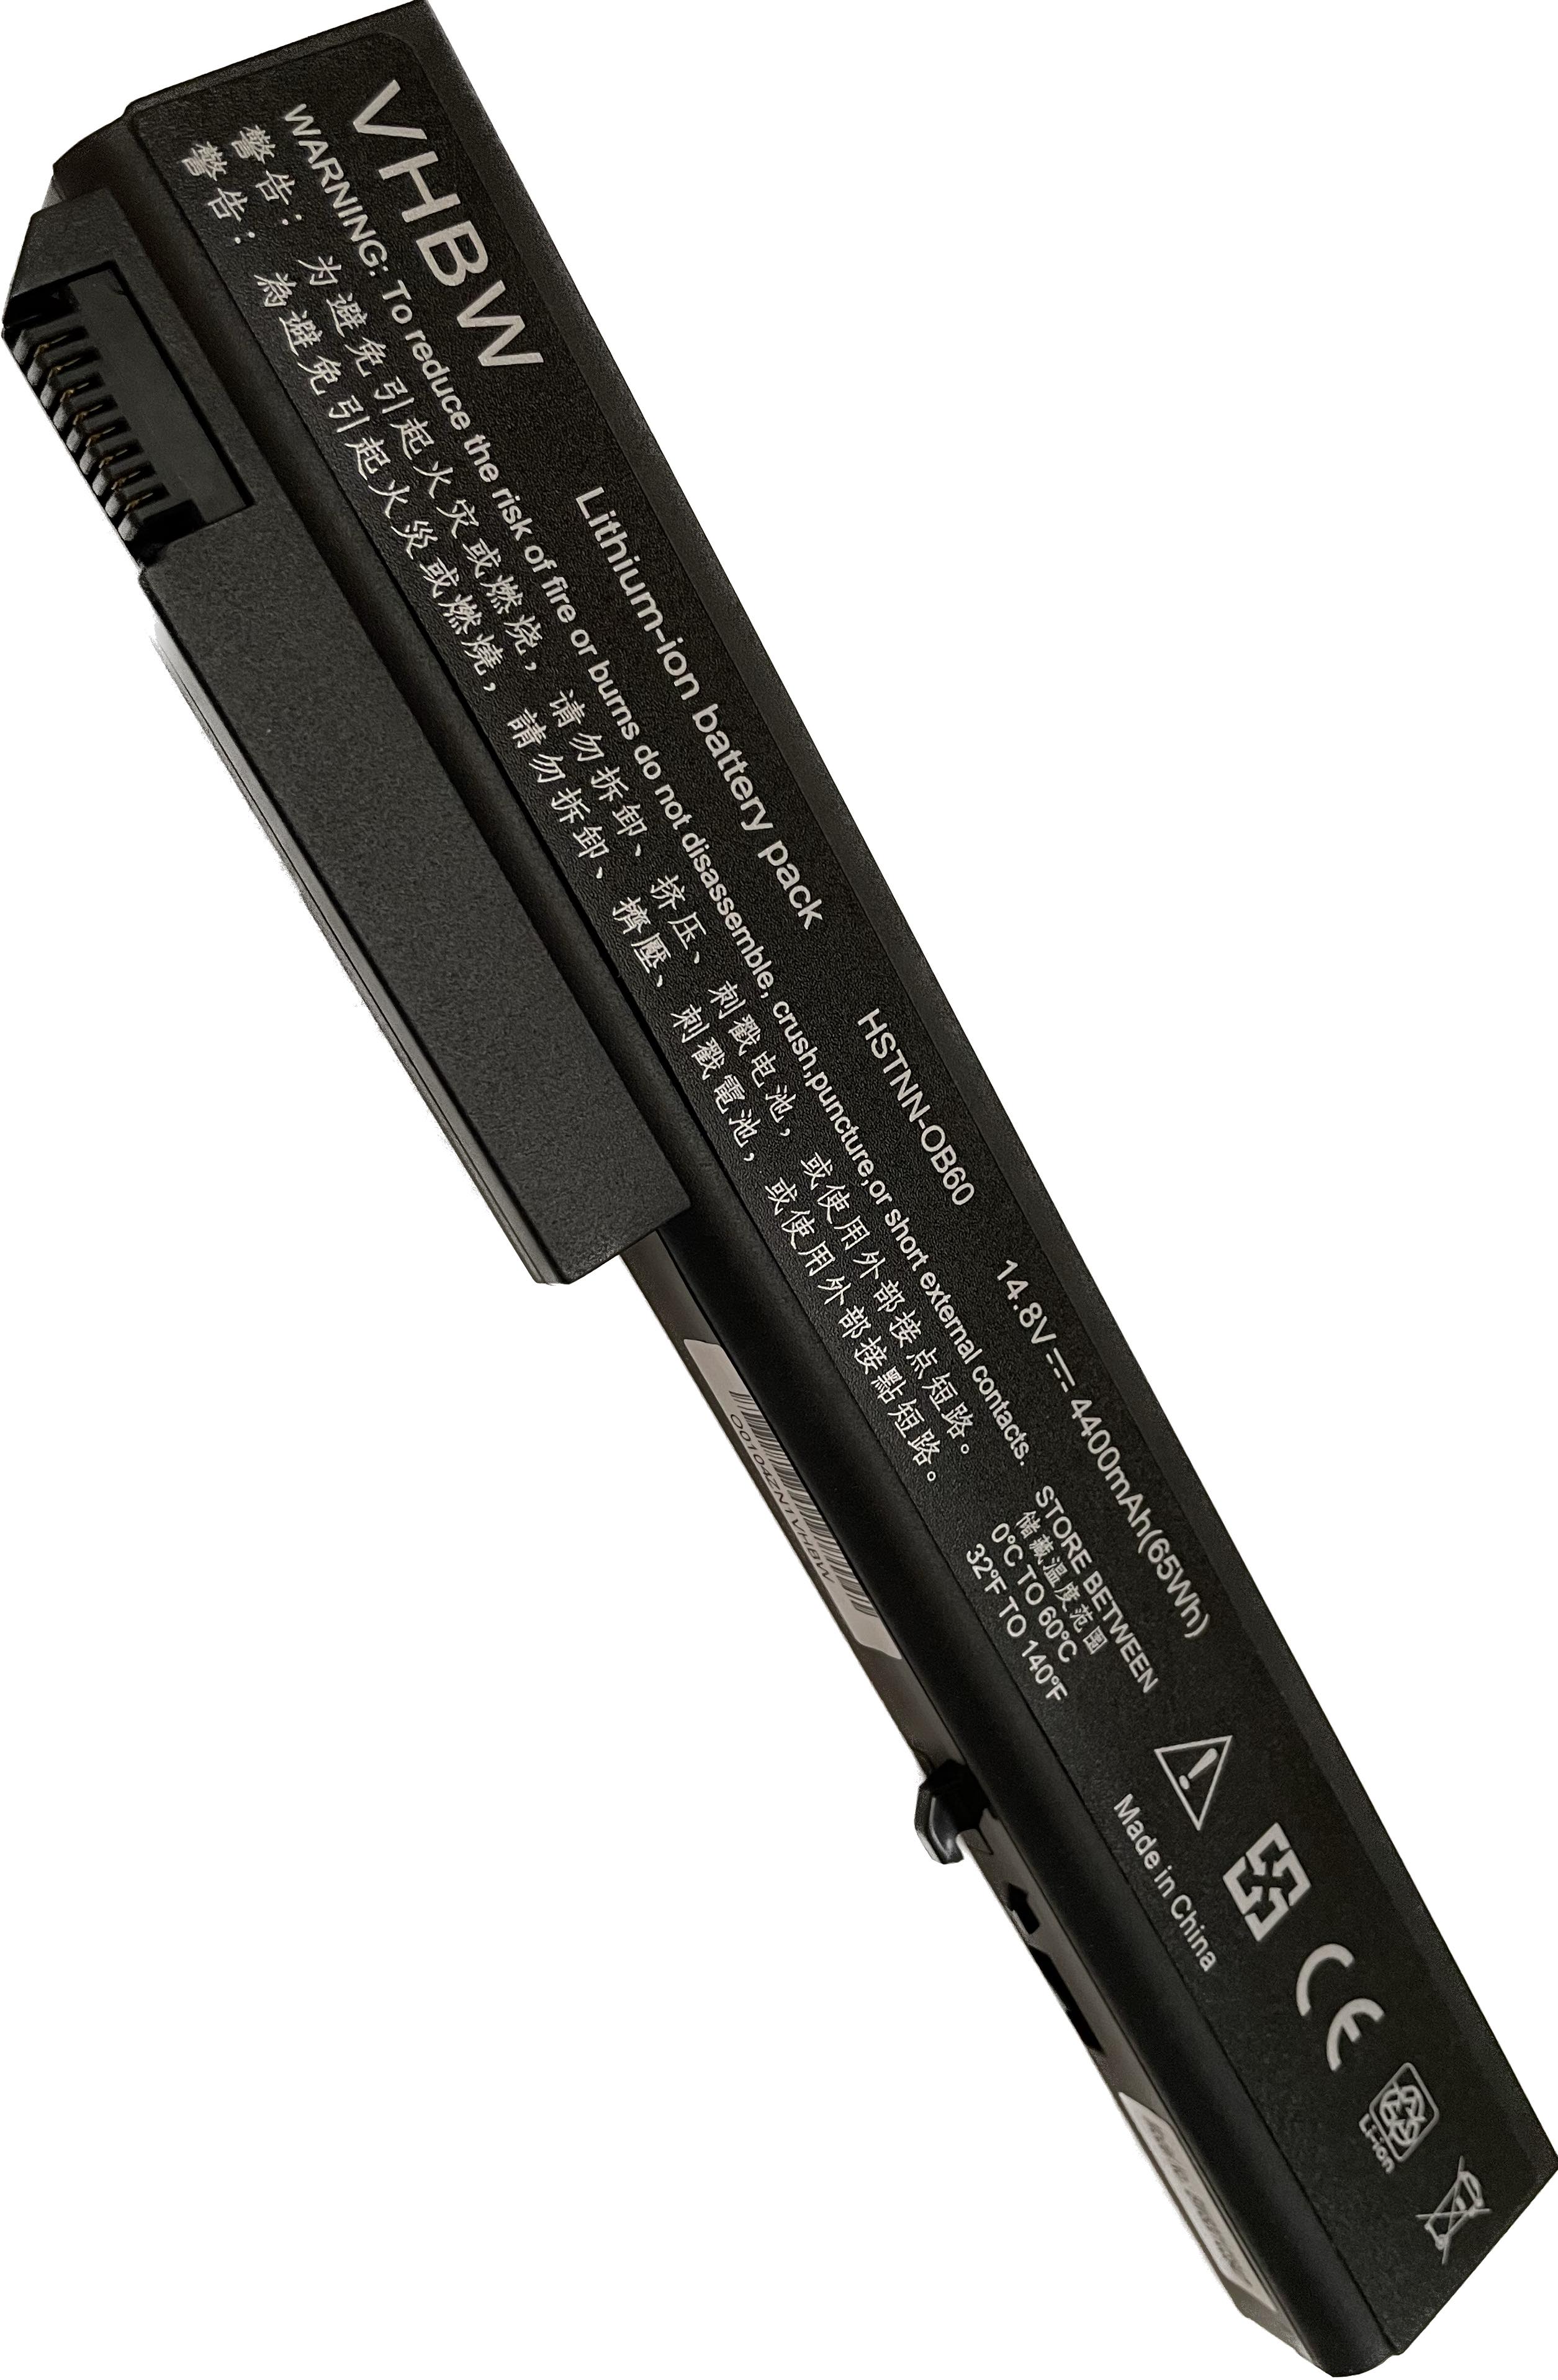 VHBW batéria HP Elitebook 8530 , 4400mAh, 14.8V Li-Ion 3947 - neoriginálna